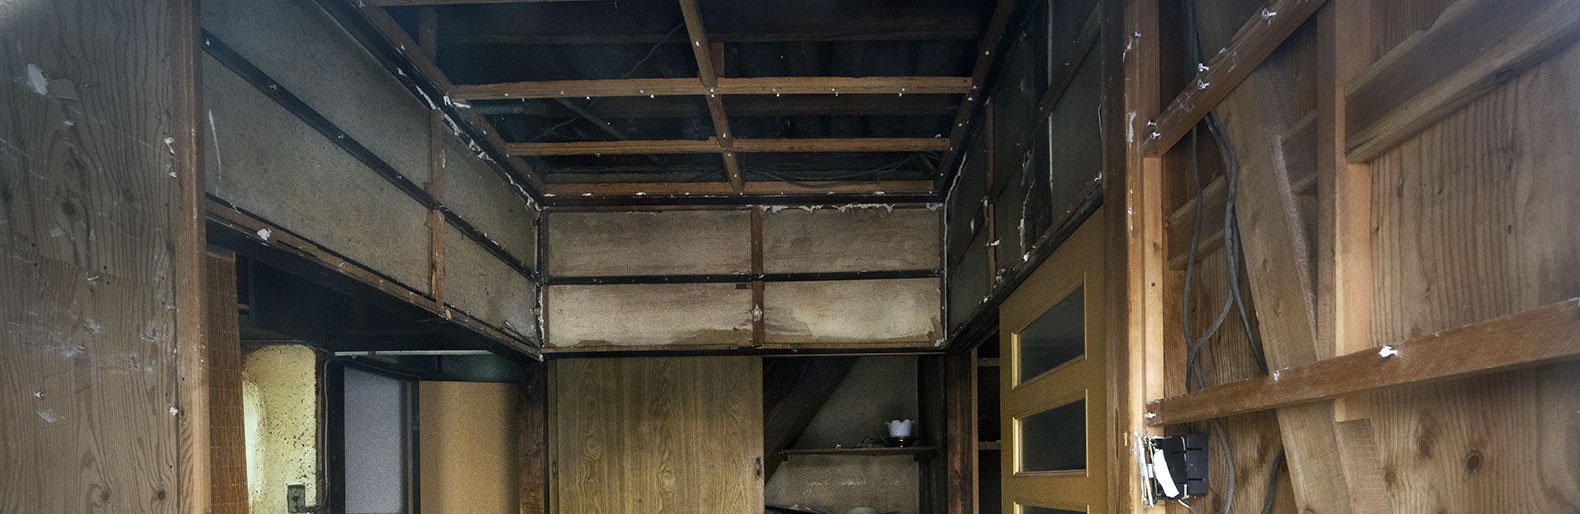 Жителям дома с обрушившимся потолком в Старом Осколе предоставили временное жильё